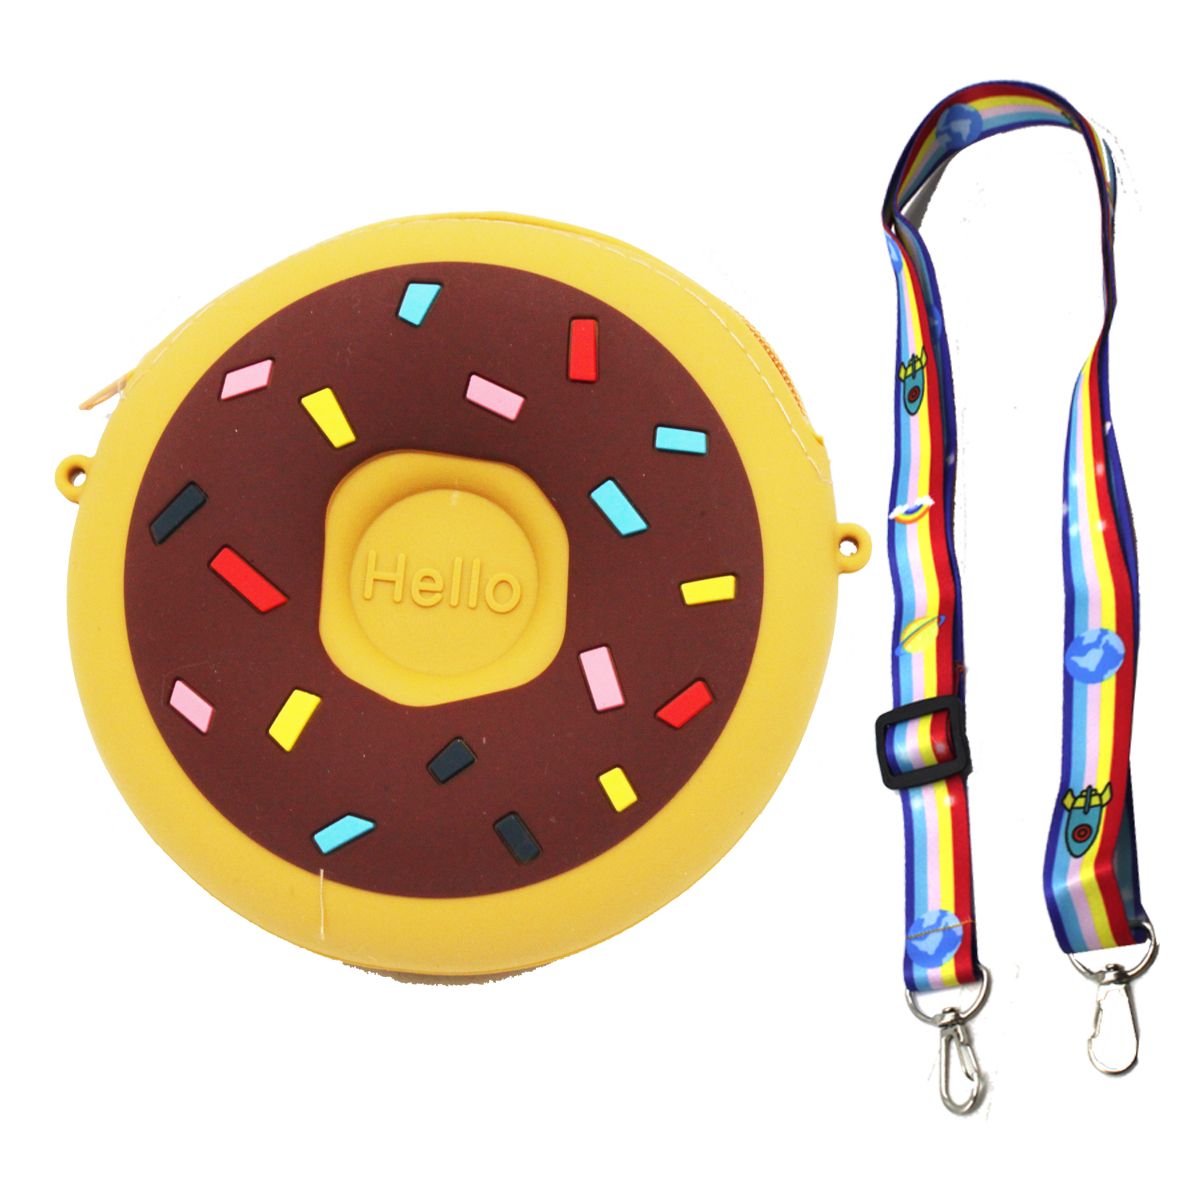 Дитяча сумочка-гаманець  "Пончик", 3 кольори, на змійці, 1 відділення, регульована ручка